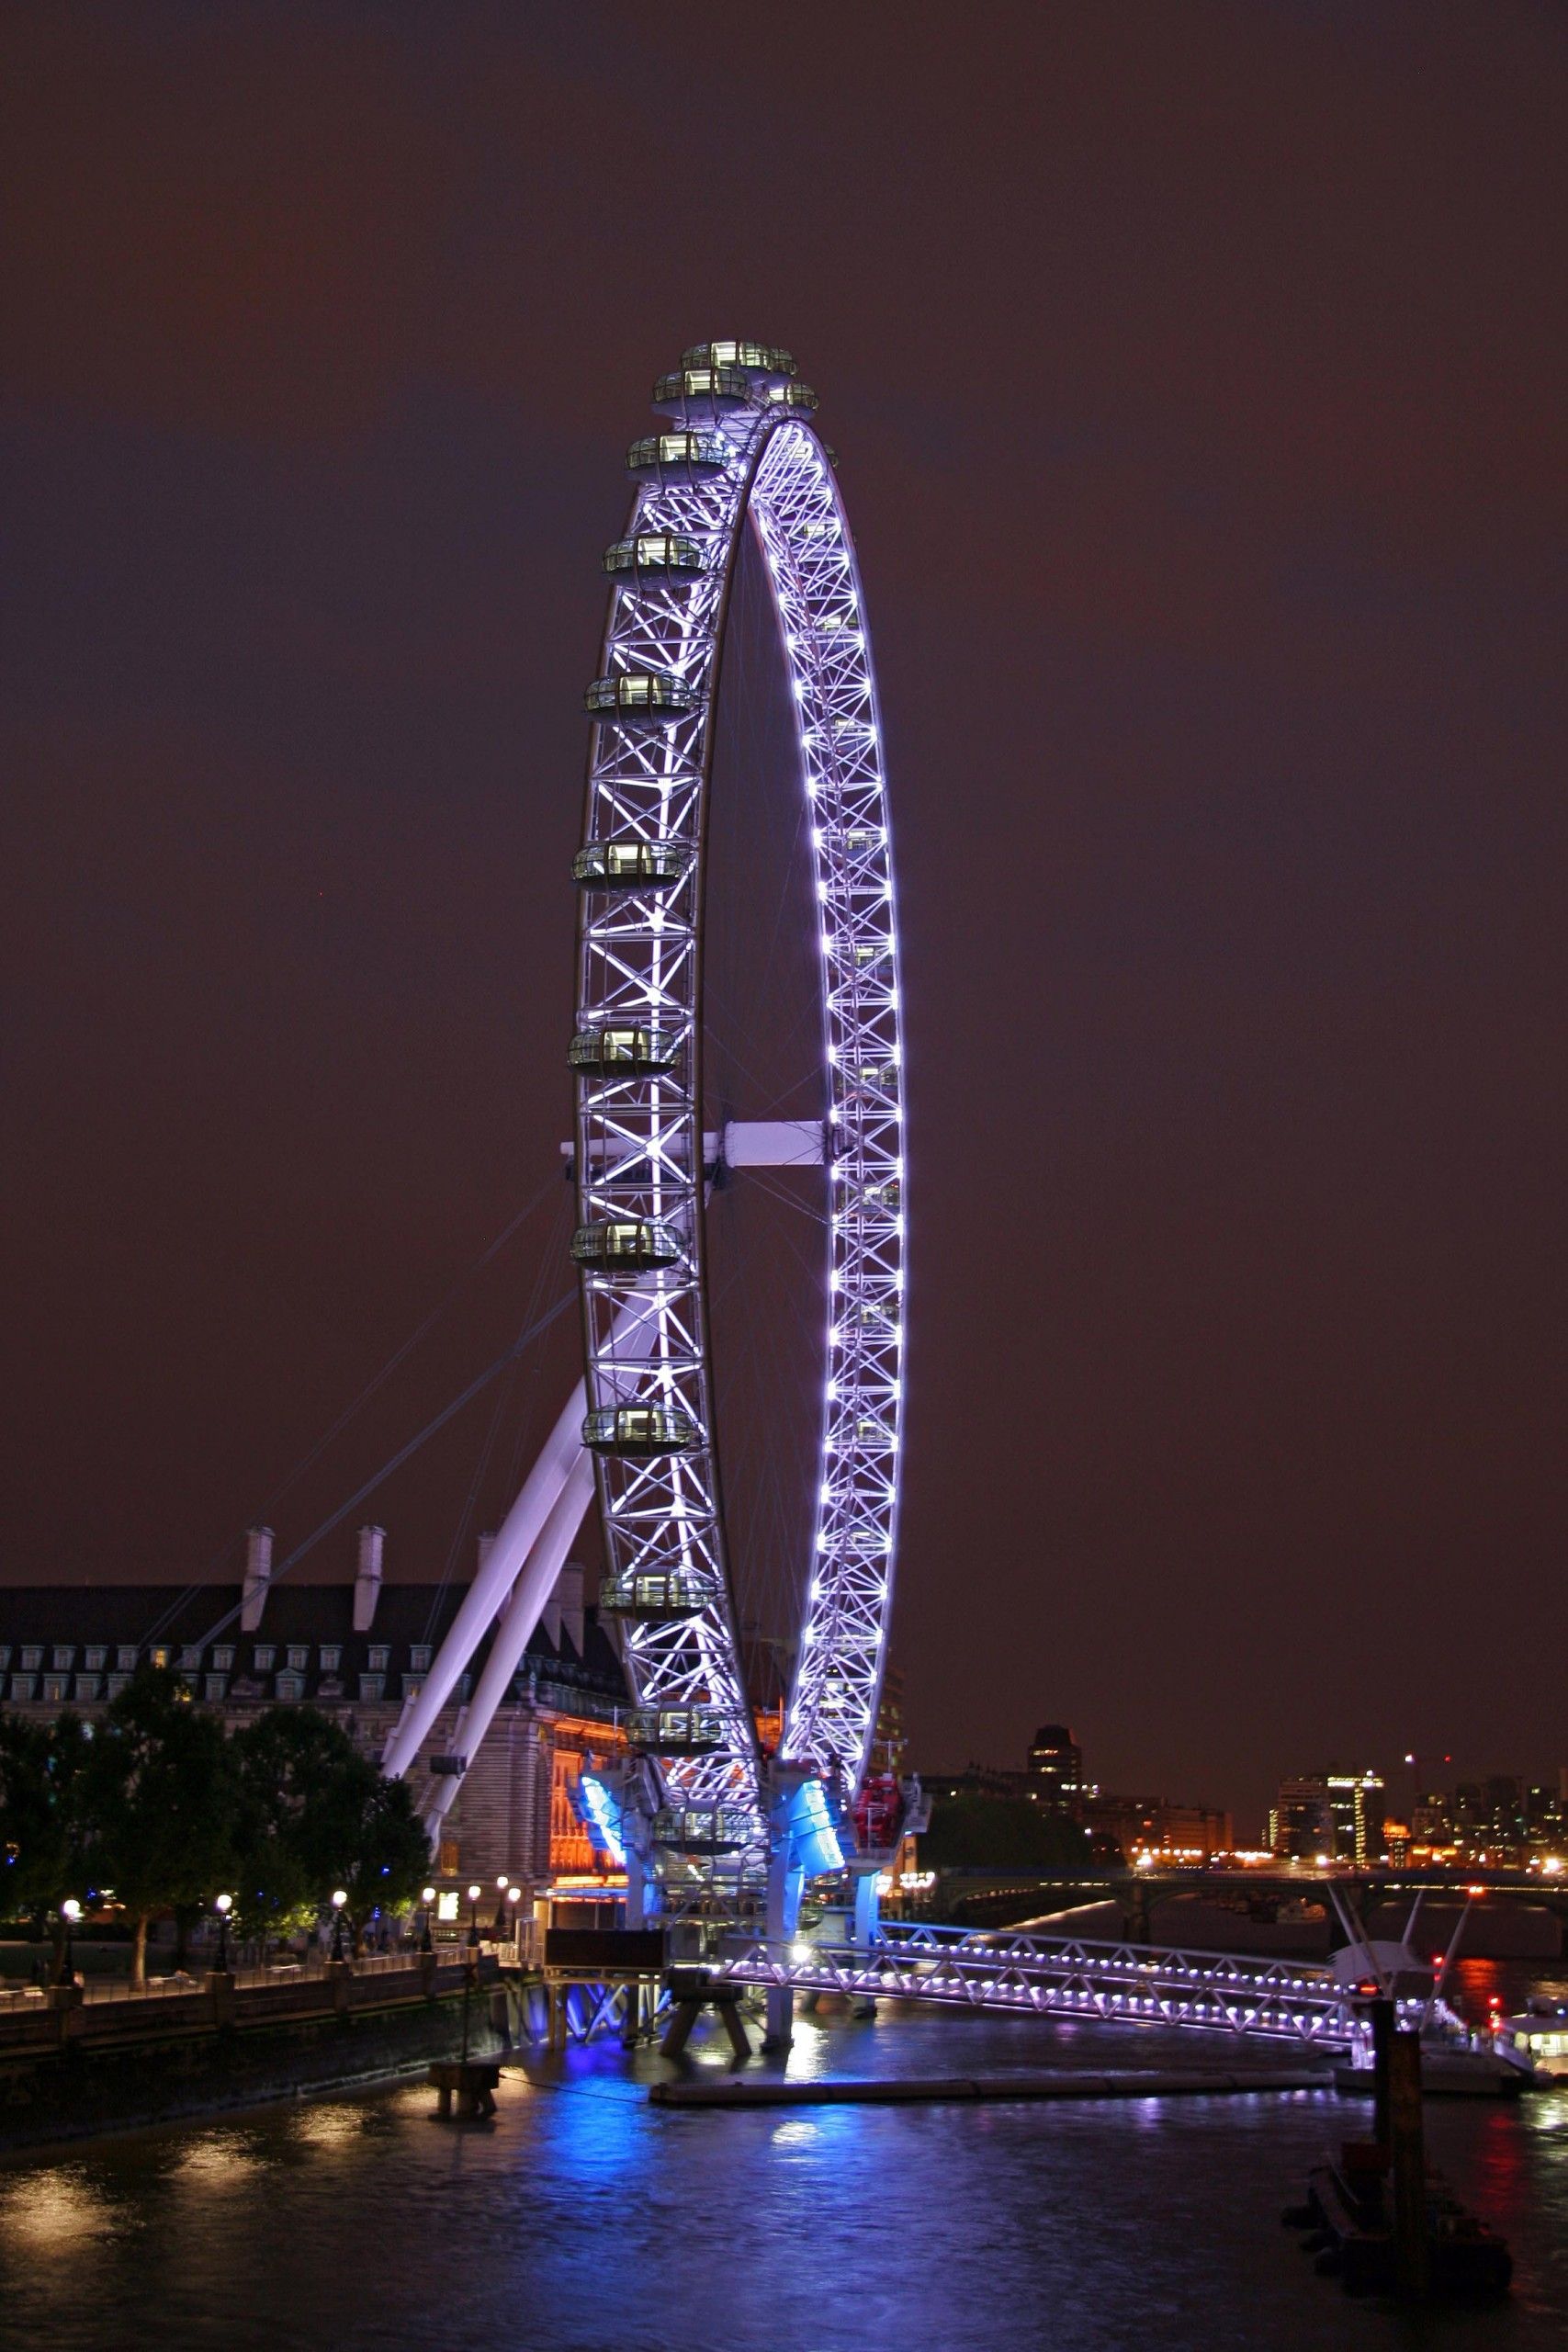 London Eye by Matthew Walker